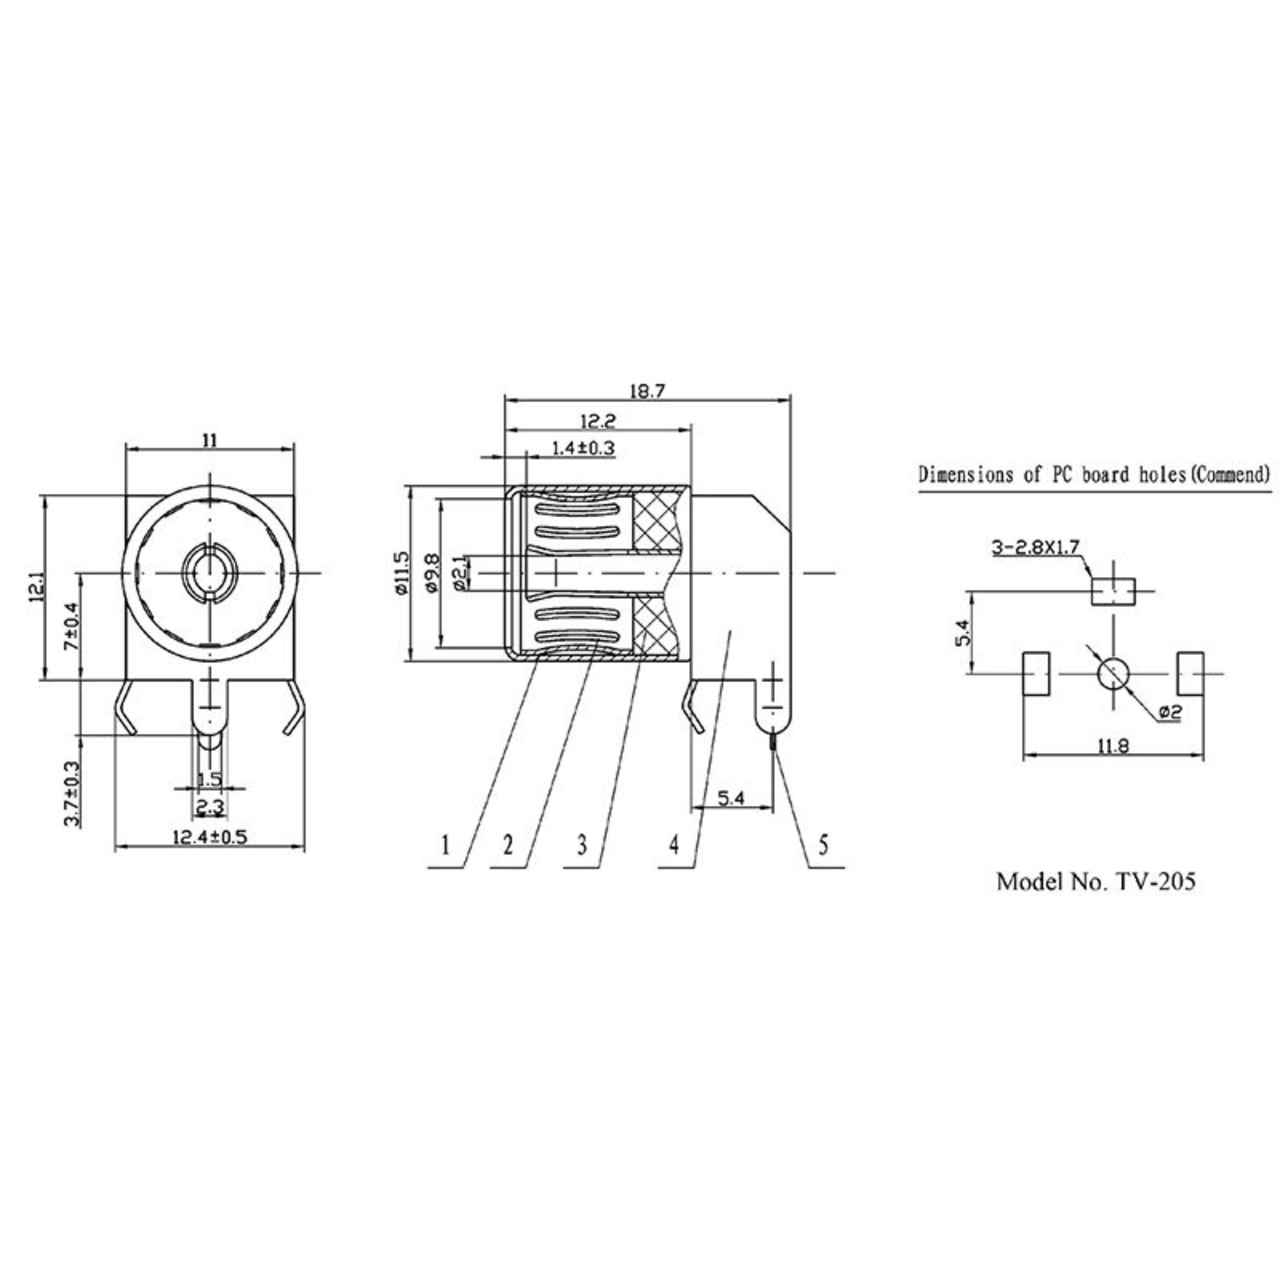 ELV Koaxial Buchse (IEC) Winkelprint unter Komponenten